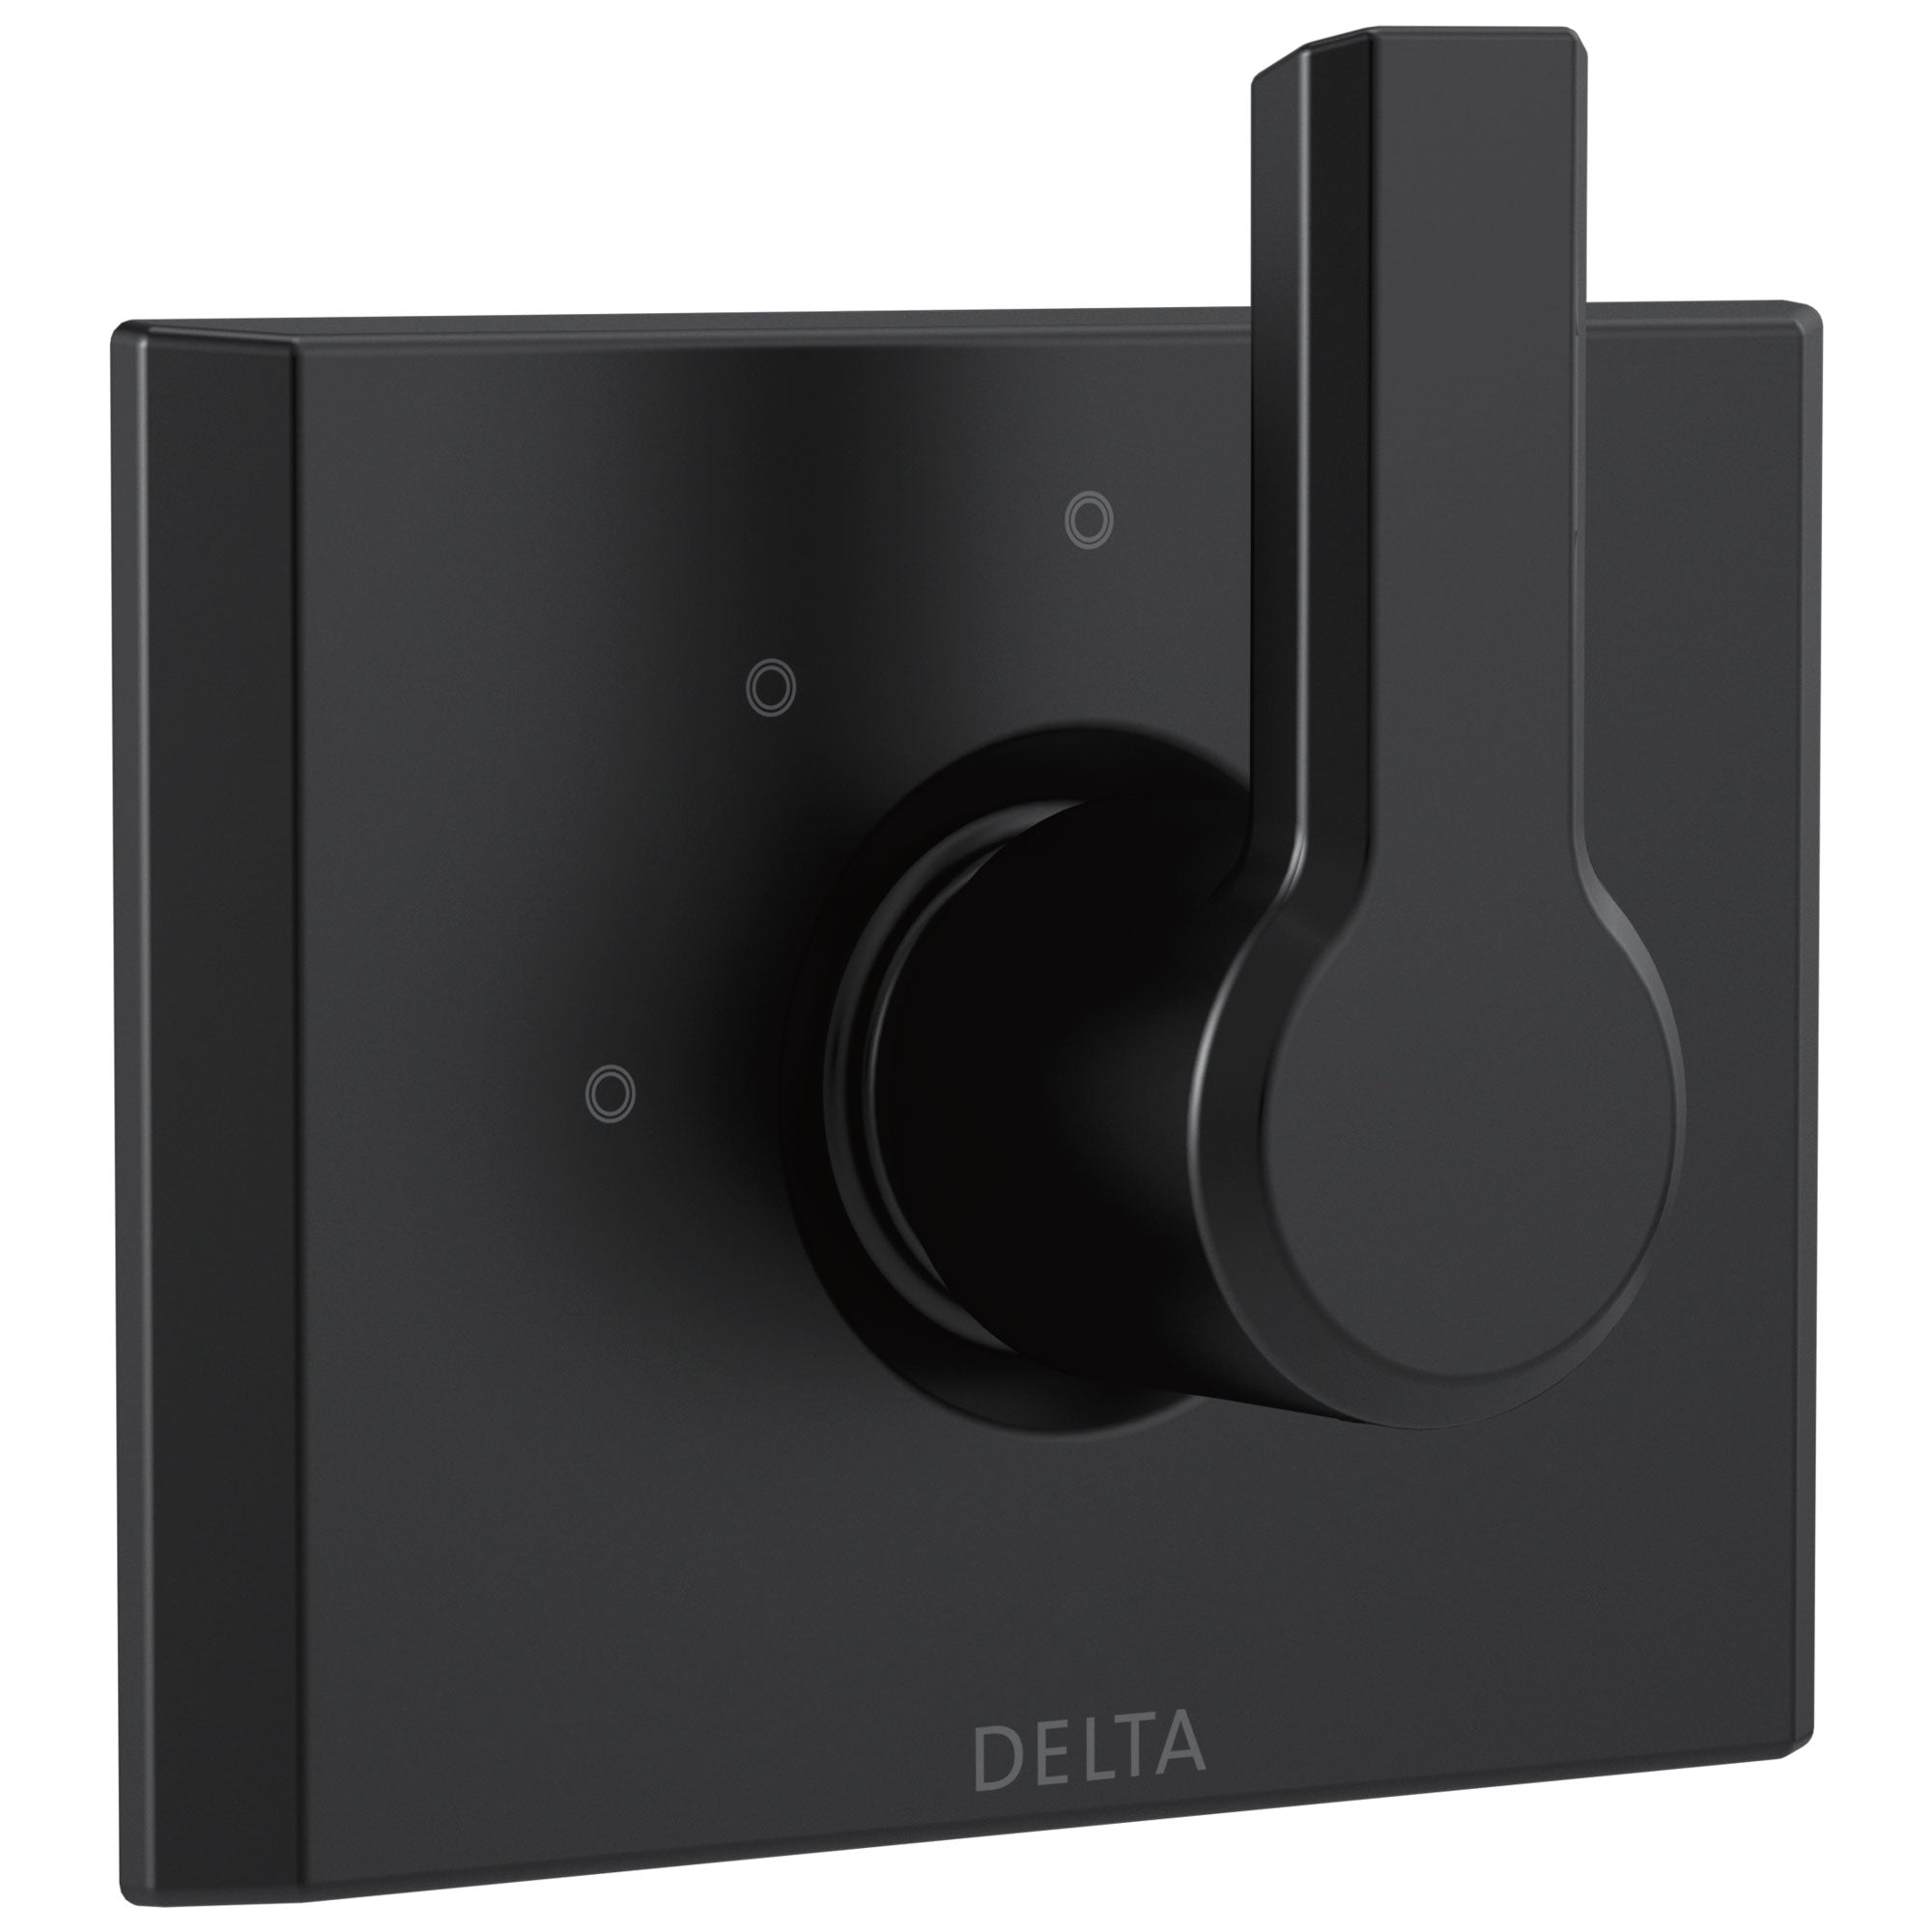 Delta Pivotal Modern Matte Black Finish 3-Setting 2 Outlet Port Shower System Diverter Includes Lever Handle and Rough-in Valve D3572V